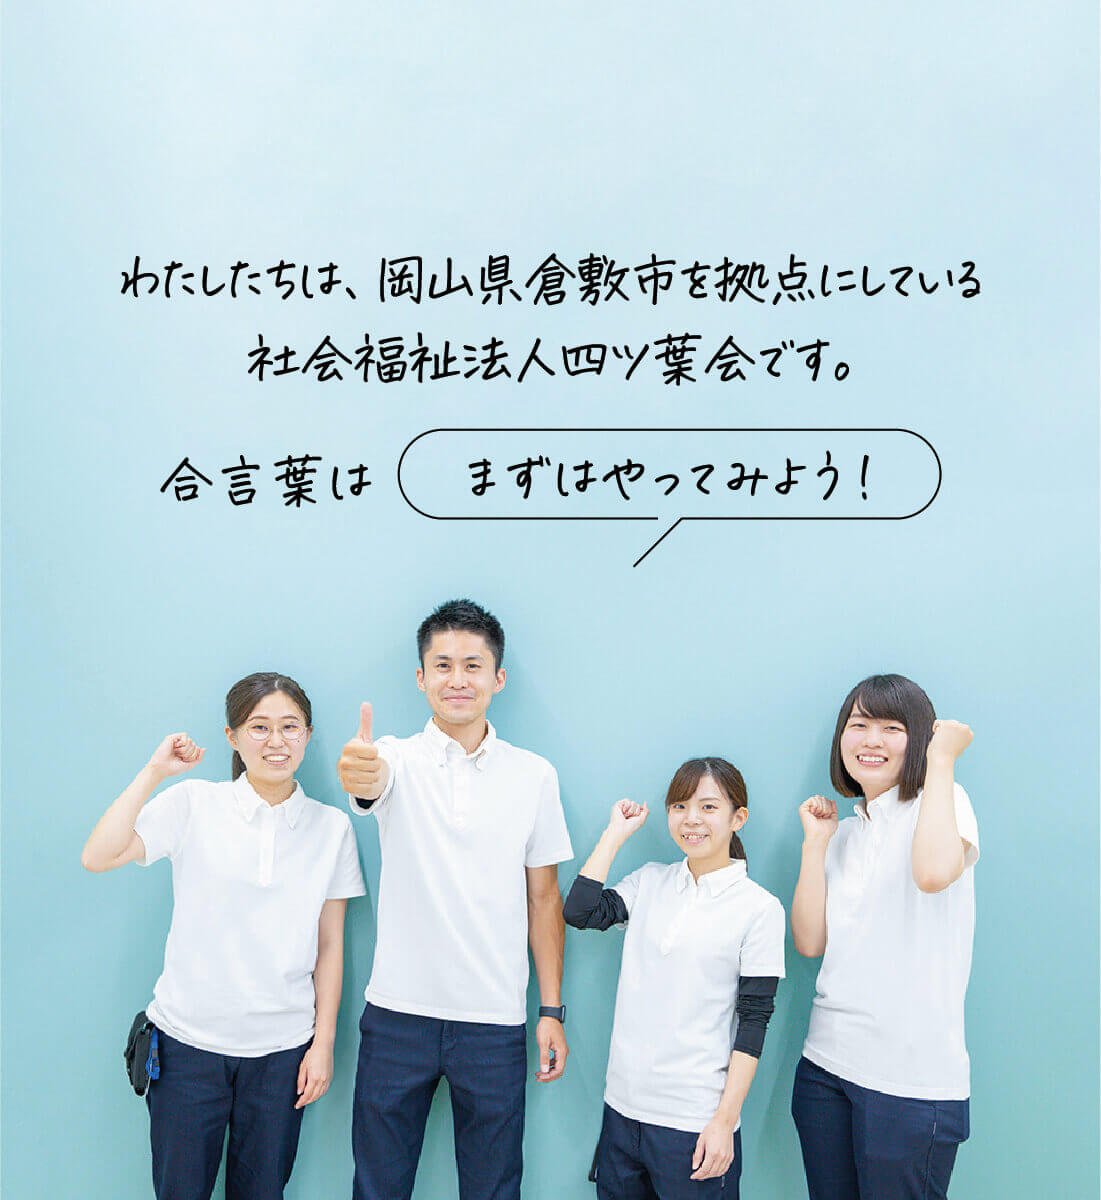 わたしたちは、岡山県倉敷市を拠点にしている社会福祉法人四ツ葉会です。合言葉は「まずはやってみよう！」